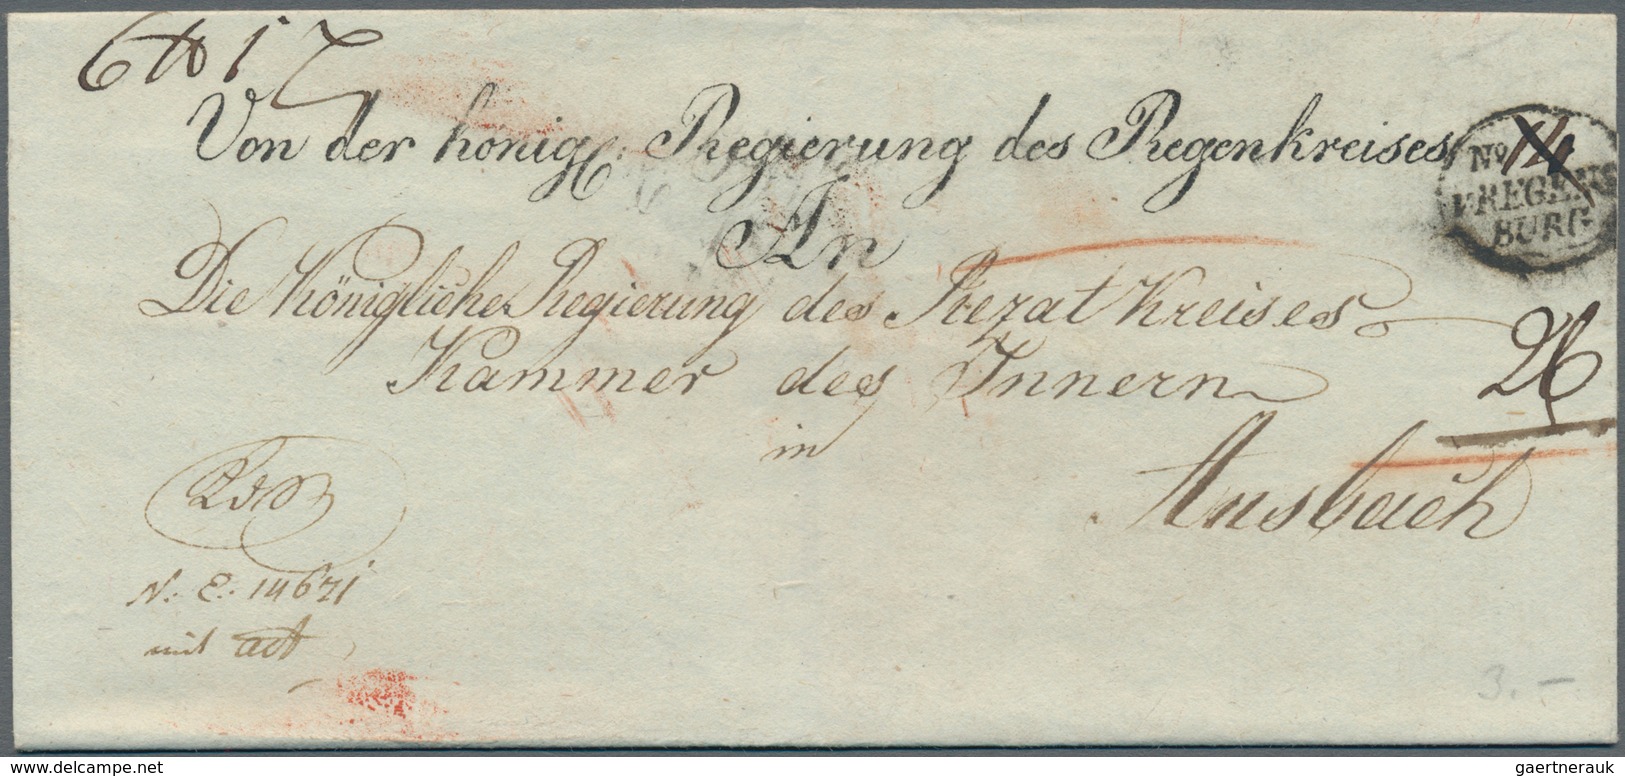 Bayern - Vorphilatelie: Ab 1648, dreibändige Sammlung mit mehreren hundert gut erhaltenen Briefen, d